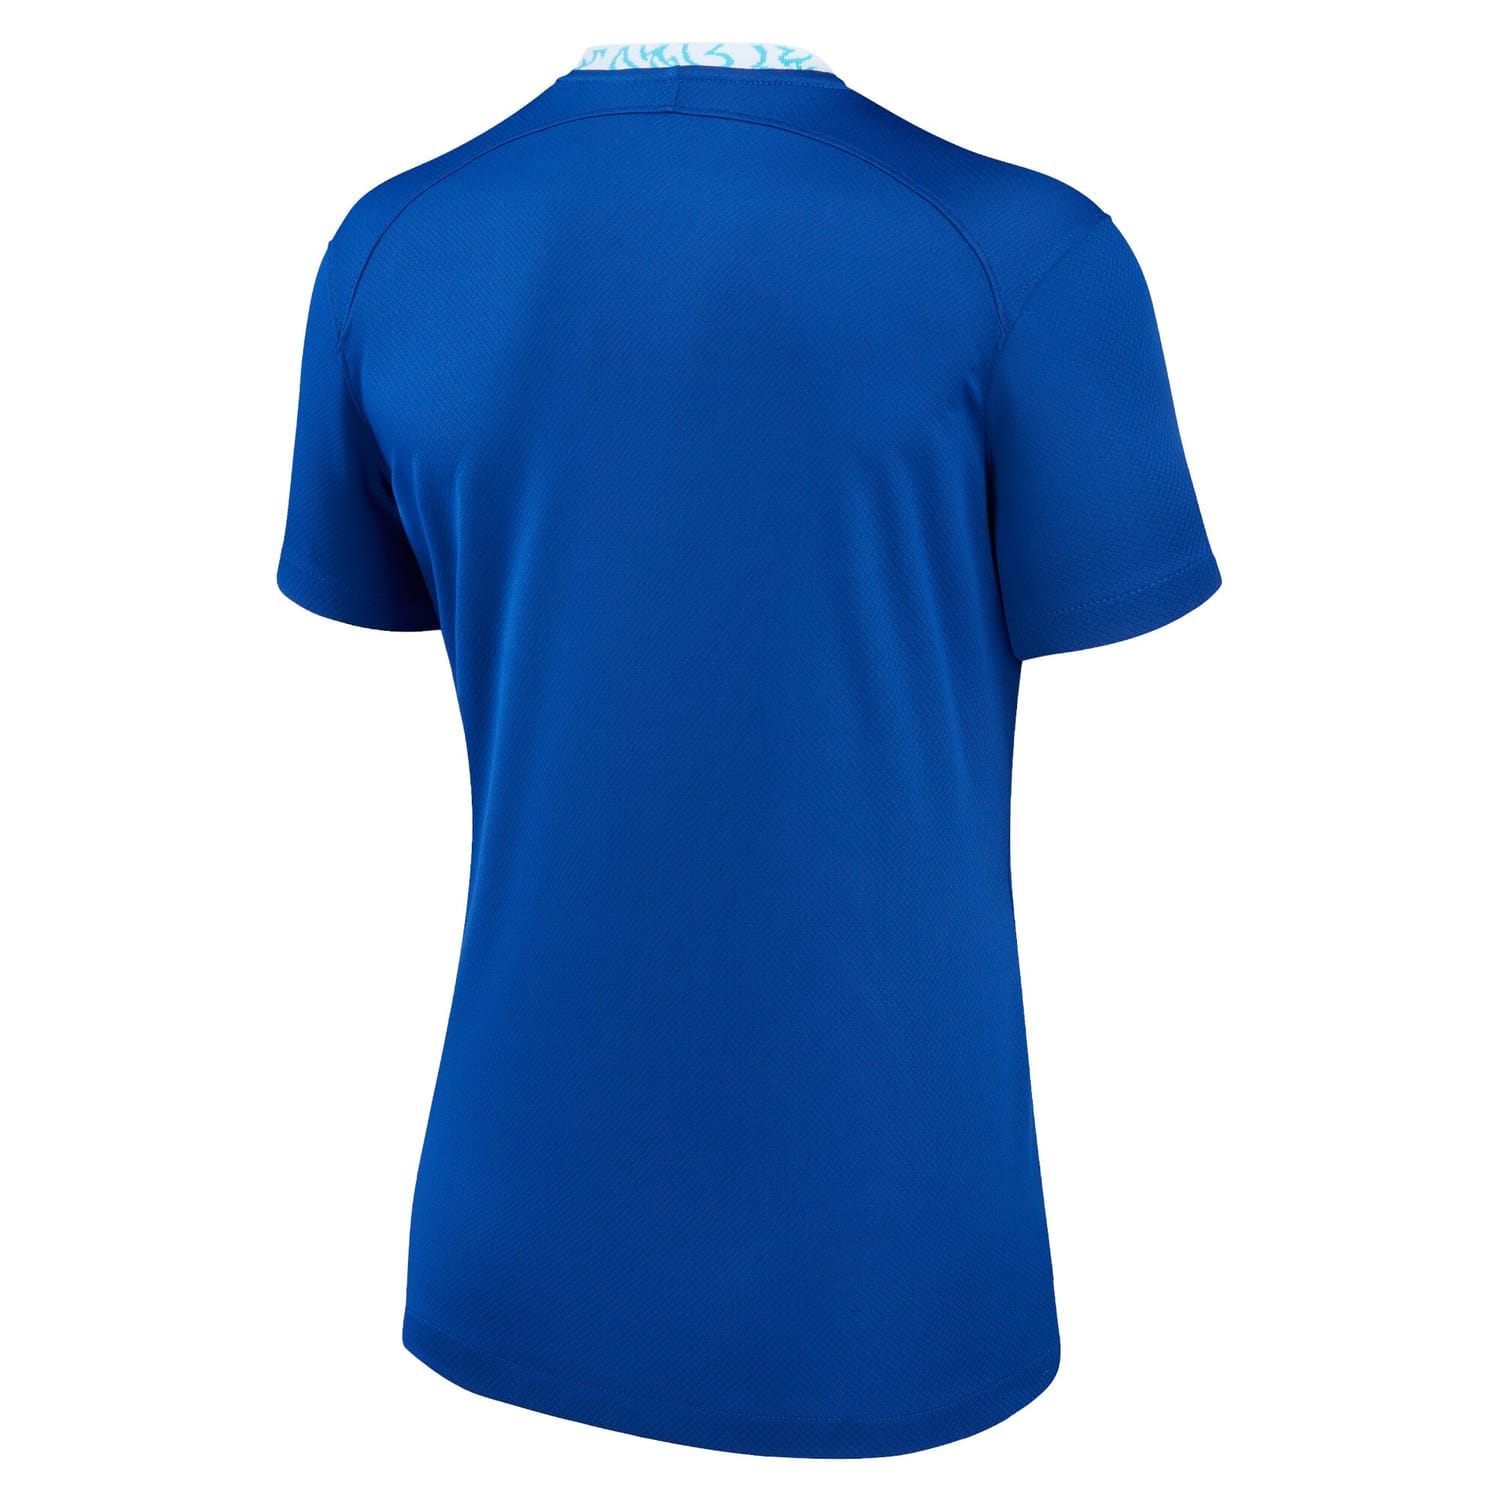 Premier League Chelsea Home Jersey Shirt Blue 2022-23 for Women